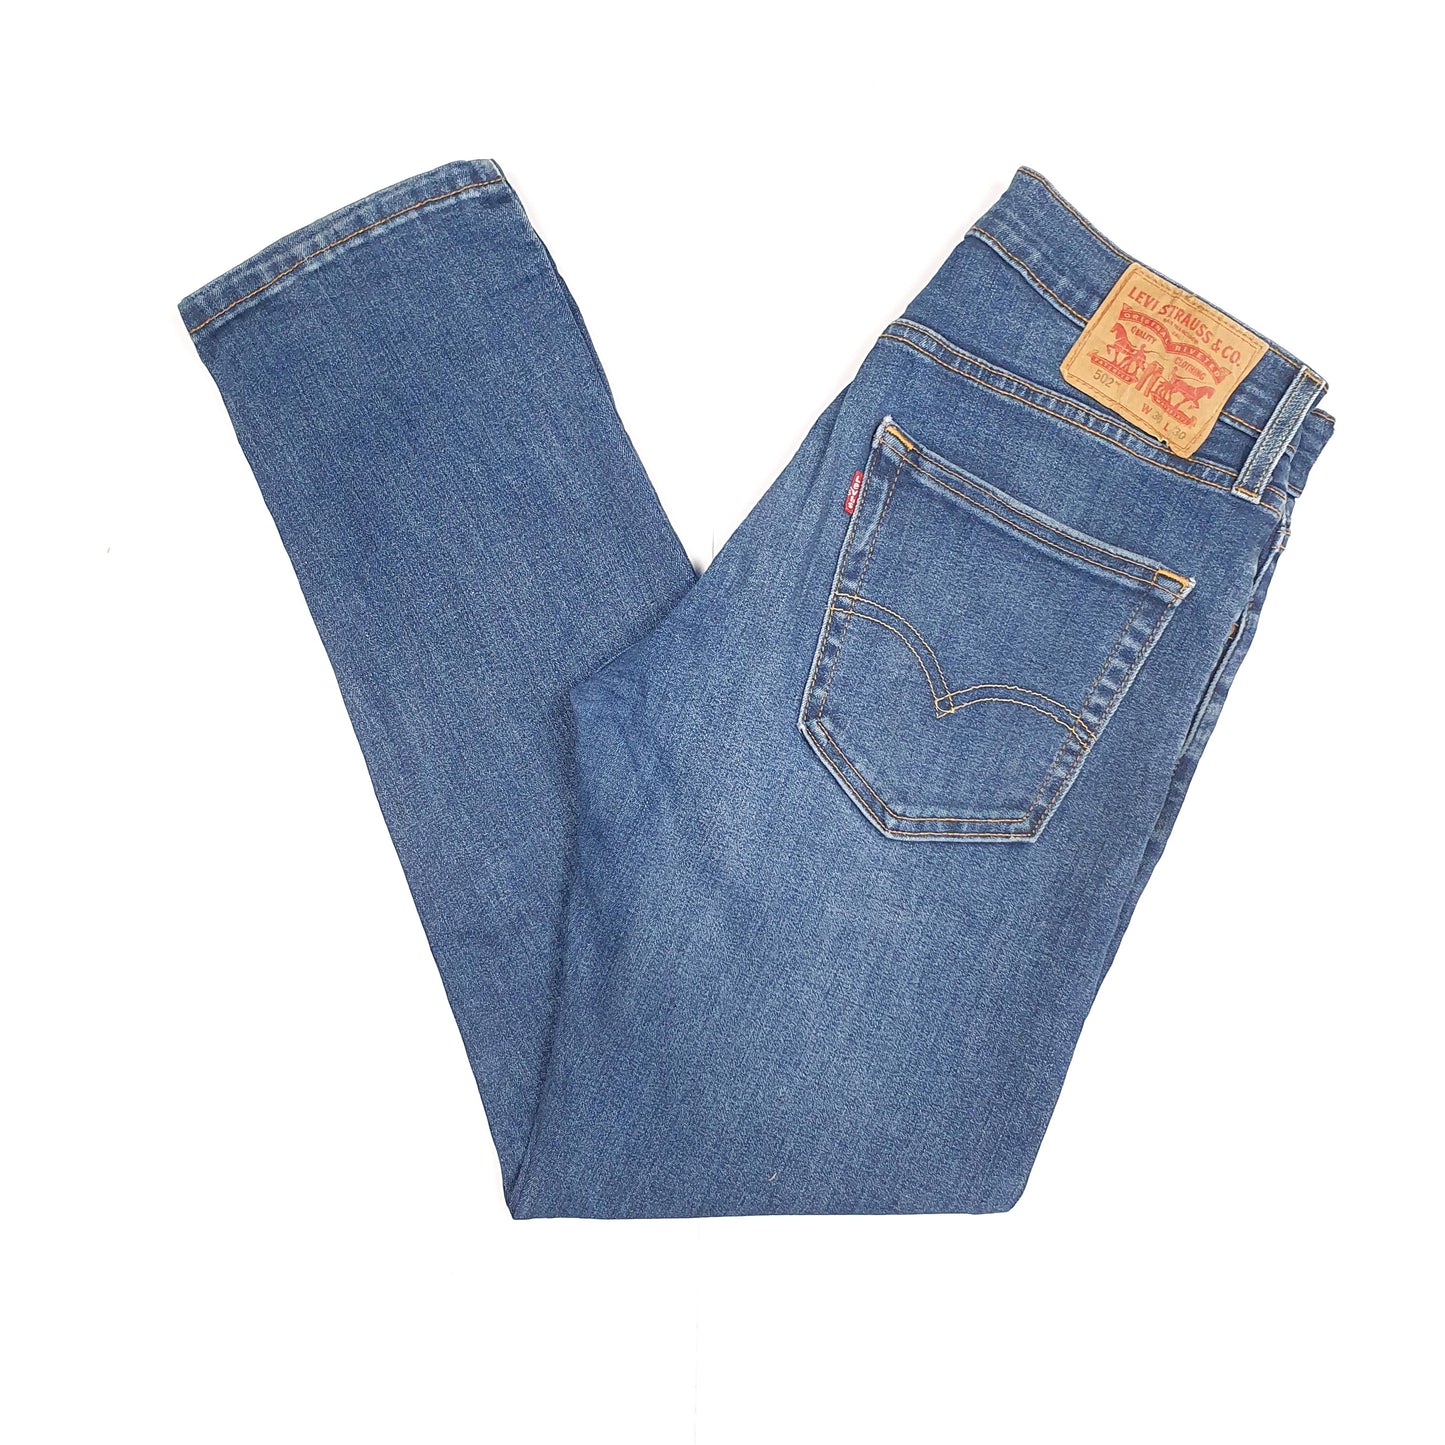 Blue Levis 502 Jeans